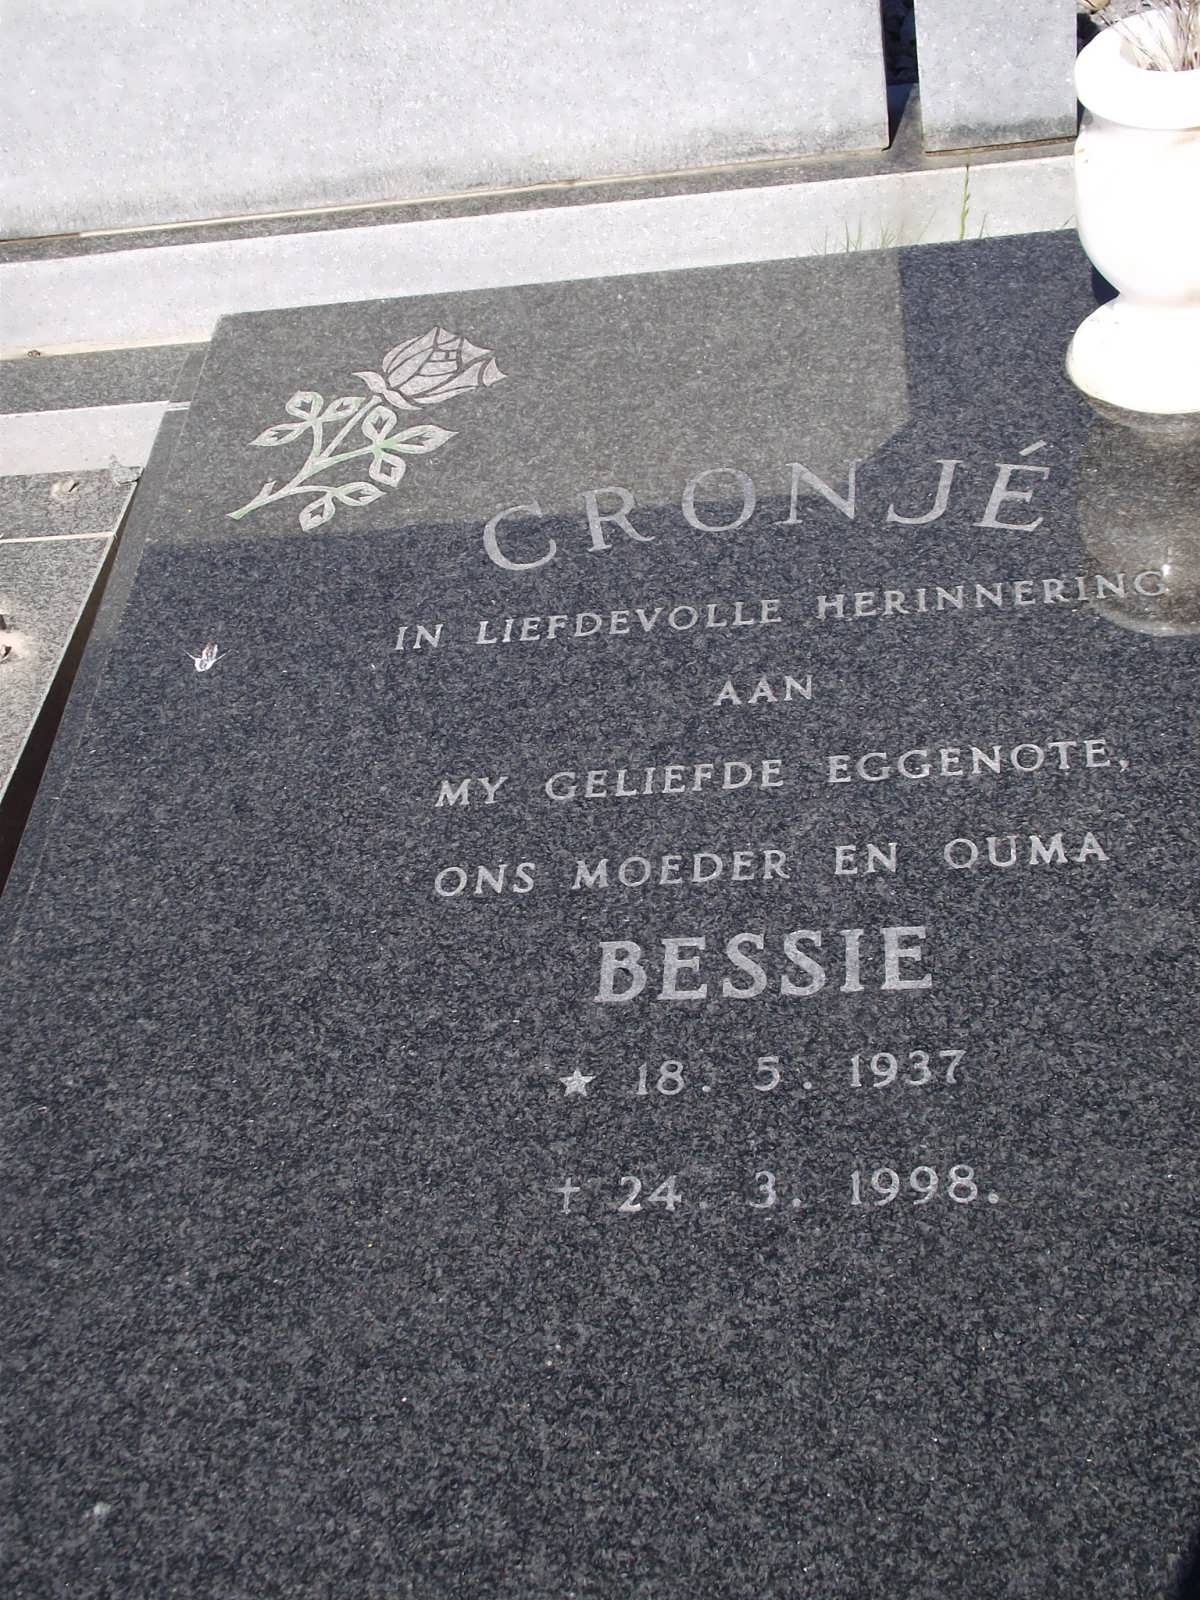 CRONJE Bessie 1937-1998